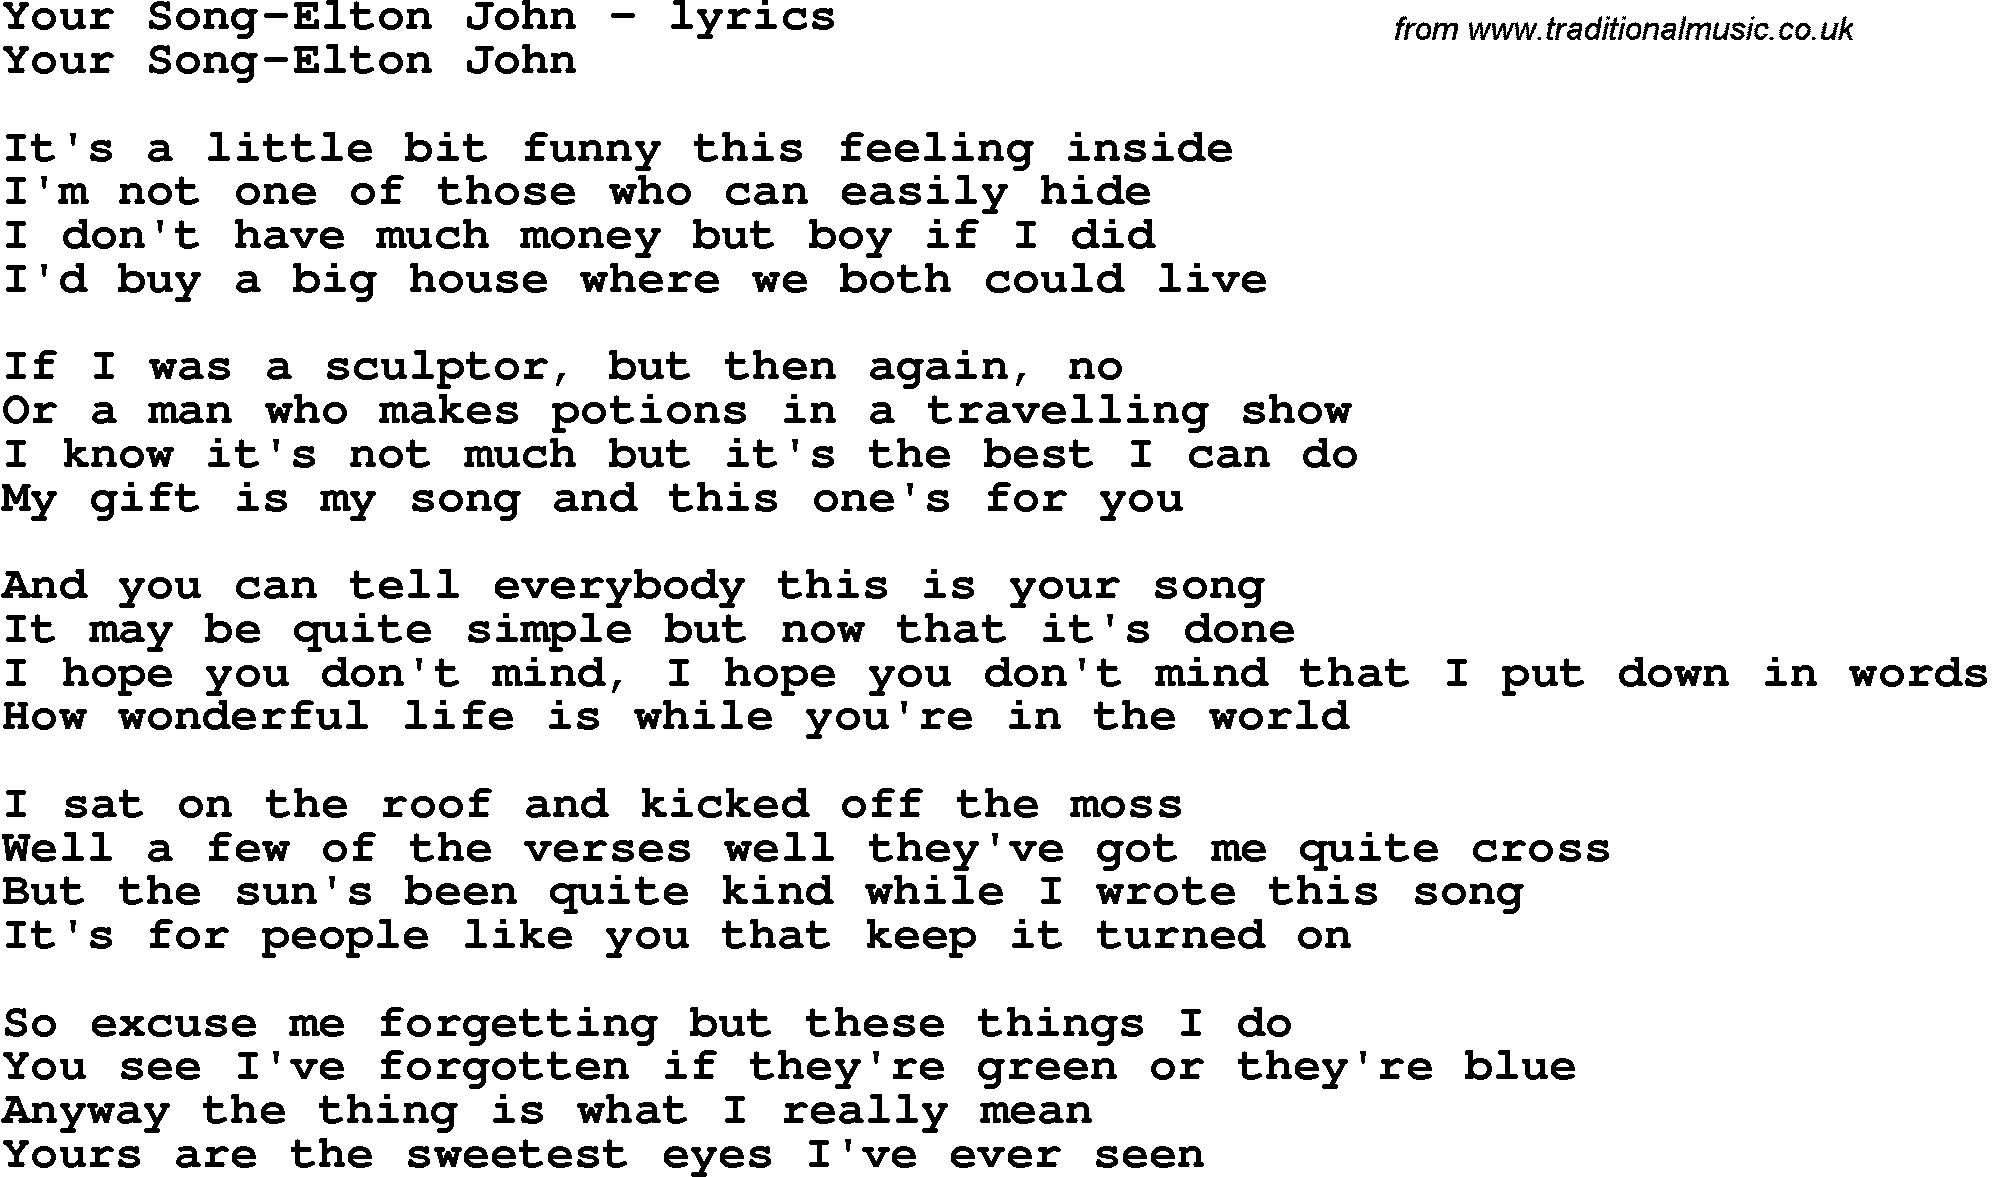 Love Song Lyrics for: Your Song-Elton John